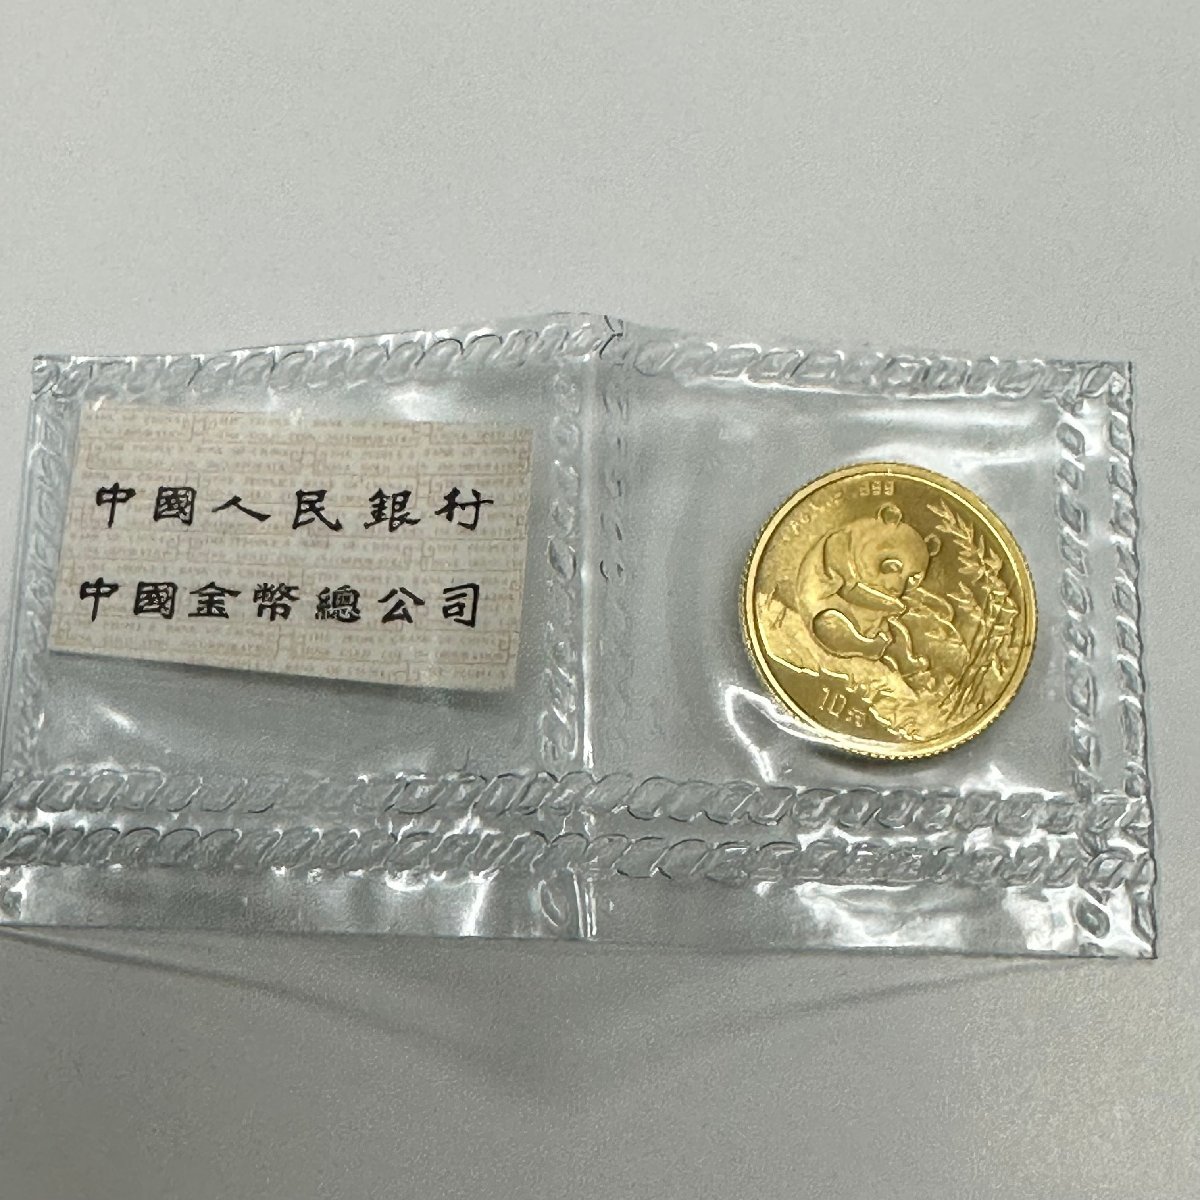 国内在庫有り NGC MS70 最高鑑定 1994年中国パンダ1/10オンス金貨 硬貨